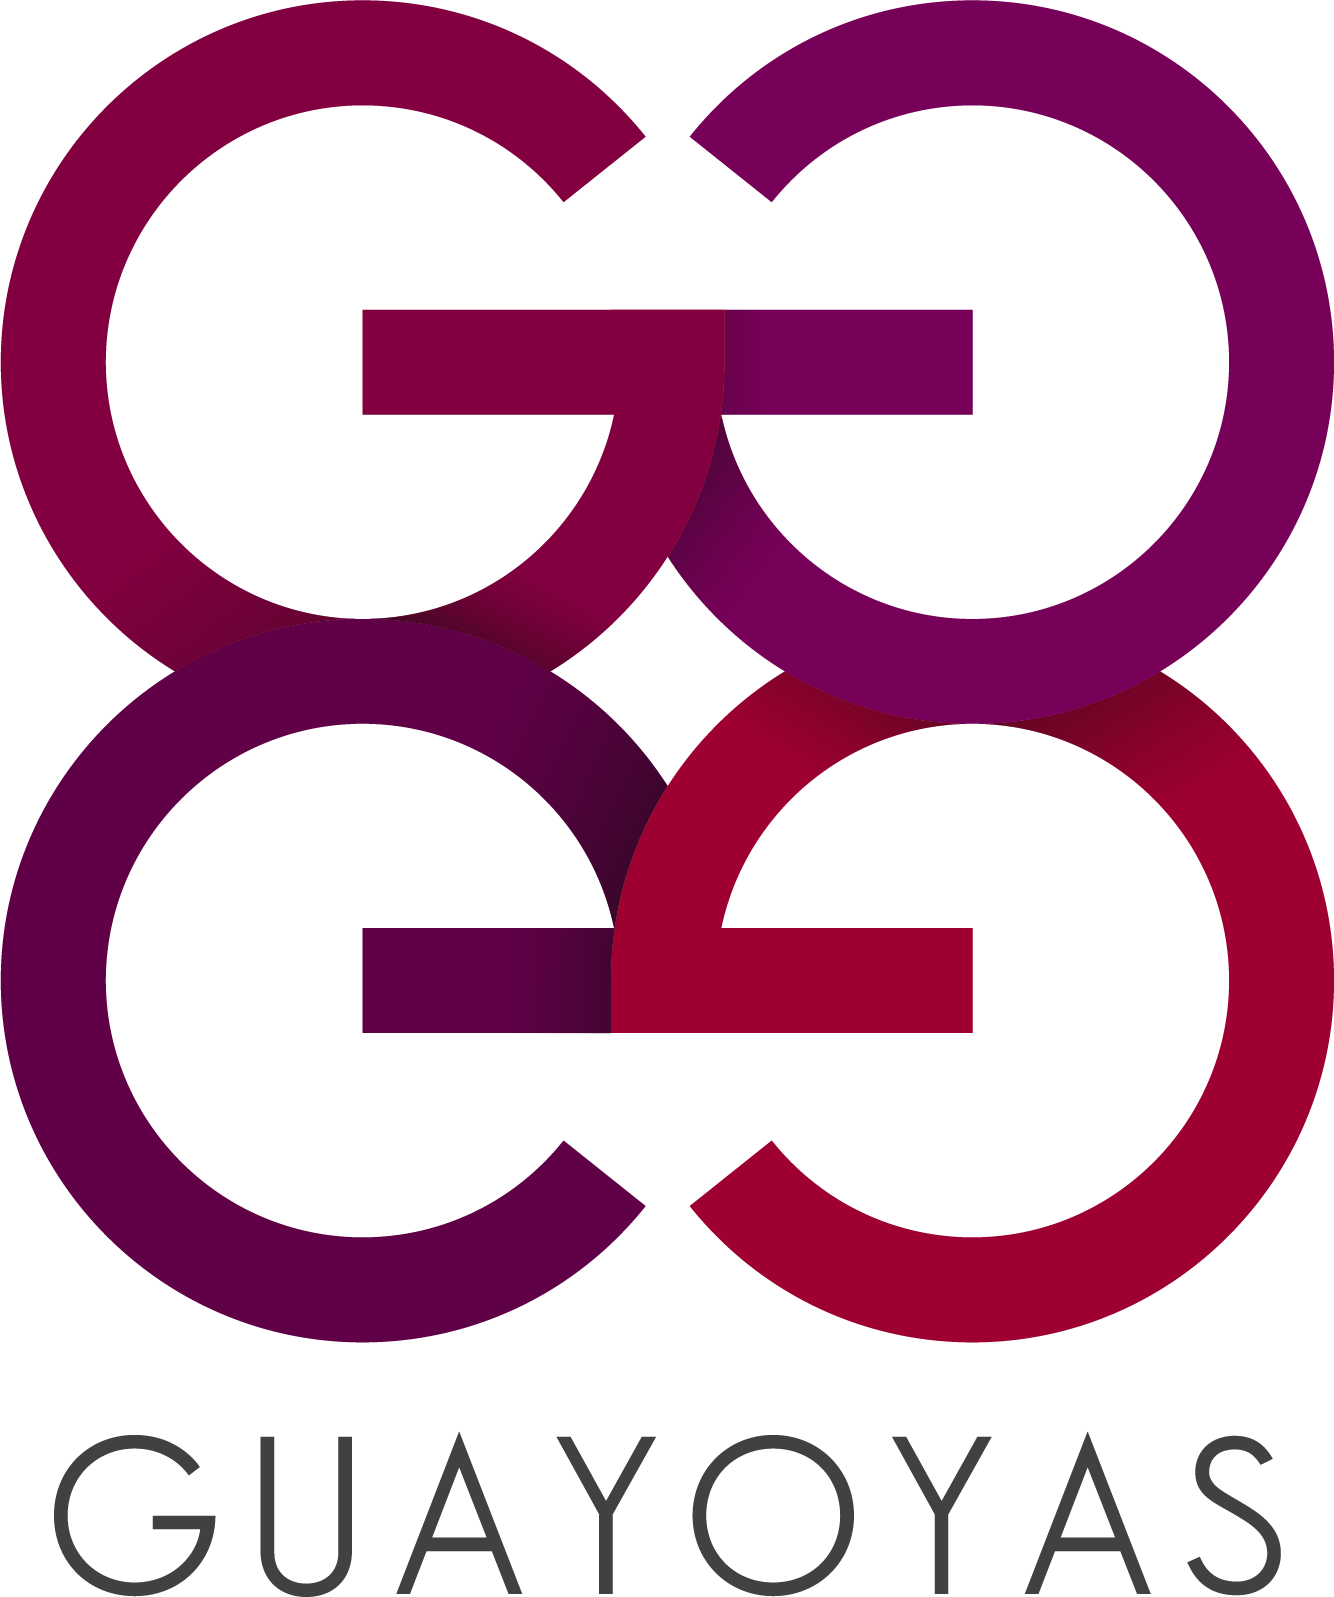 Guayoyas